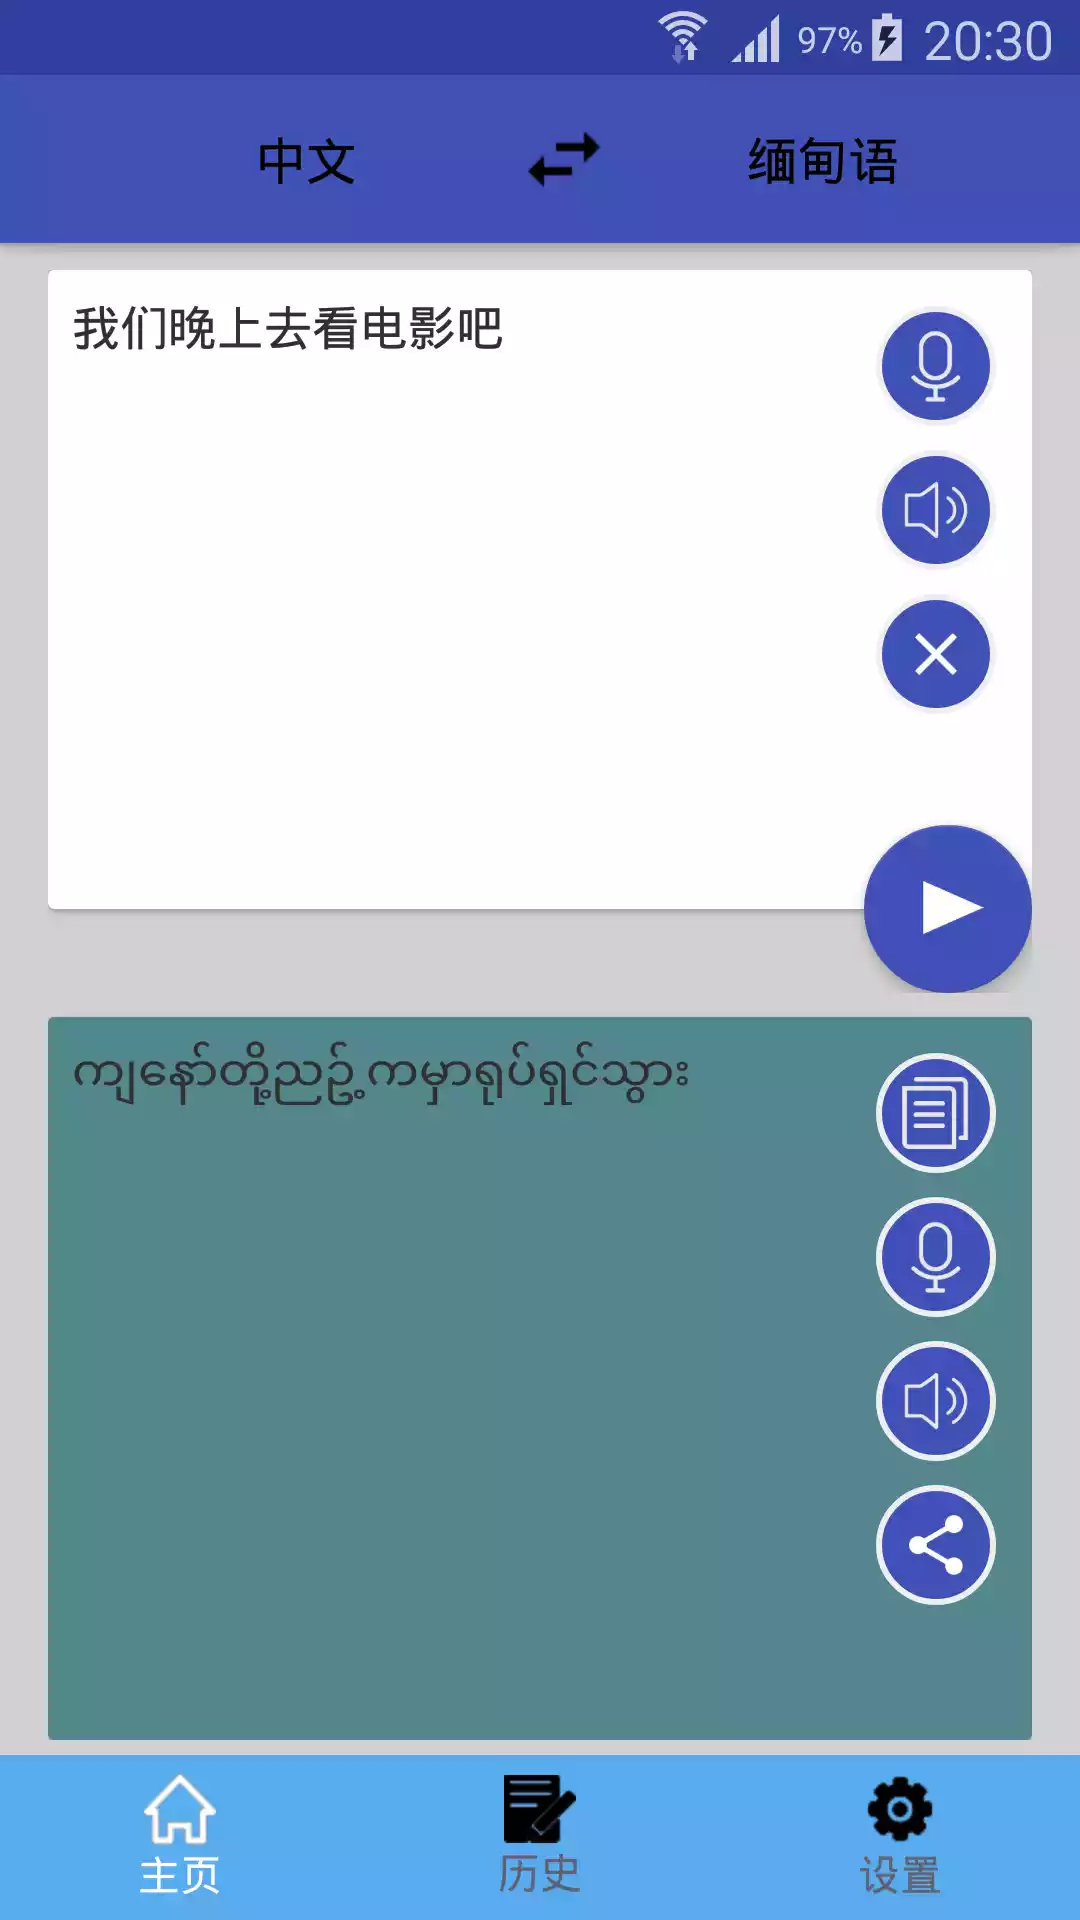 缅甸语翻译助手截图